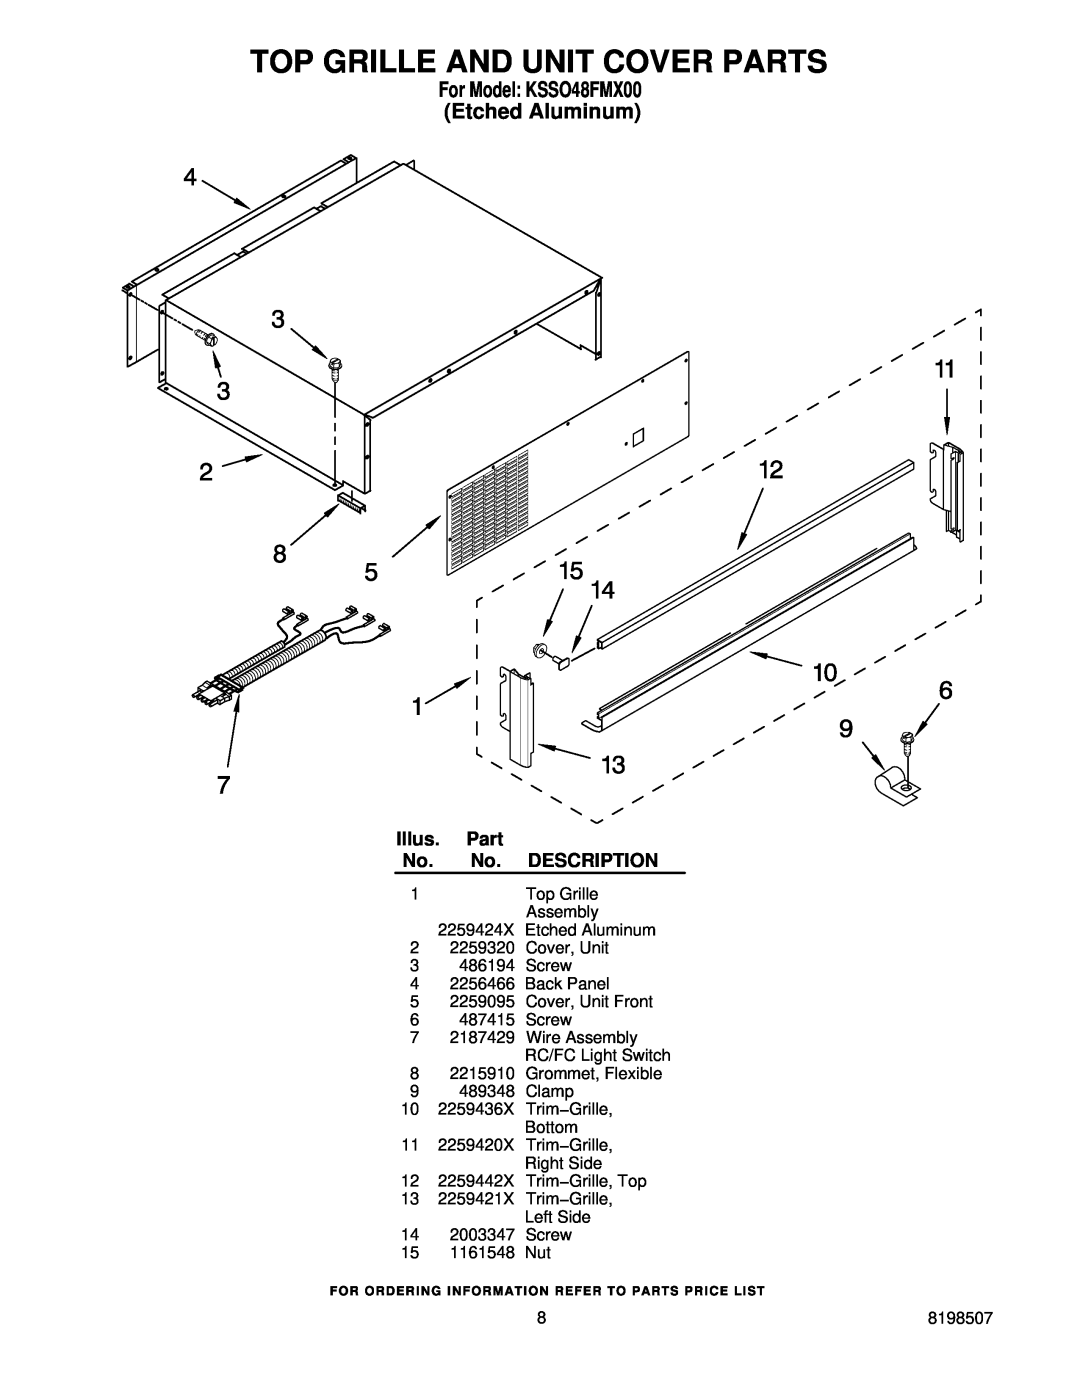 KitchenAid manual Top Grille And Unit Cover Parts, For Model KSSO48FMX00 Etched Aluminum, Illus, Description 